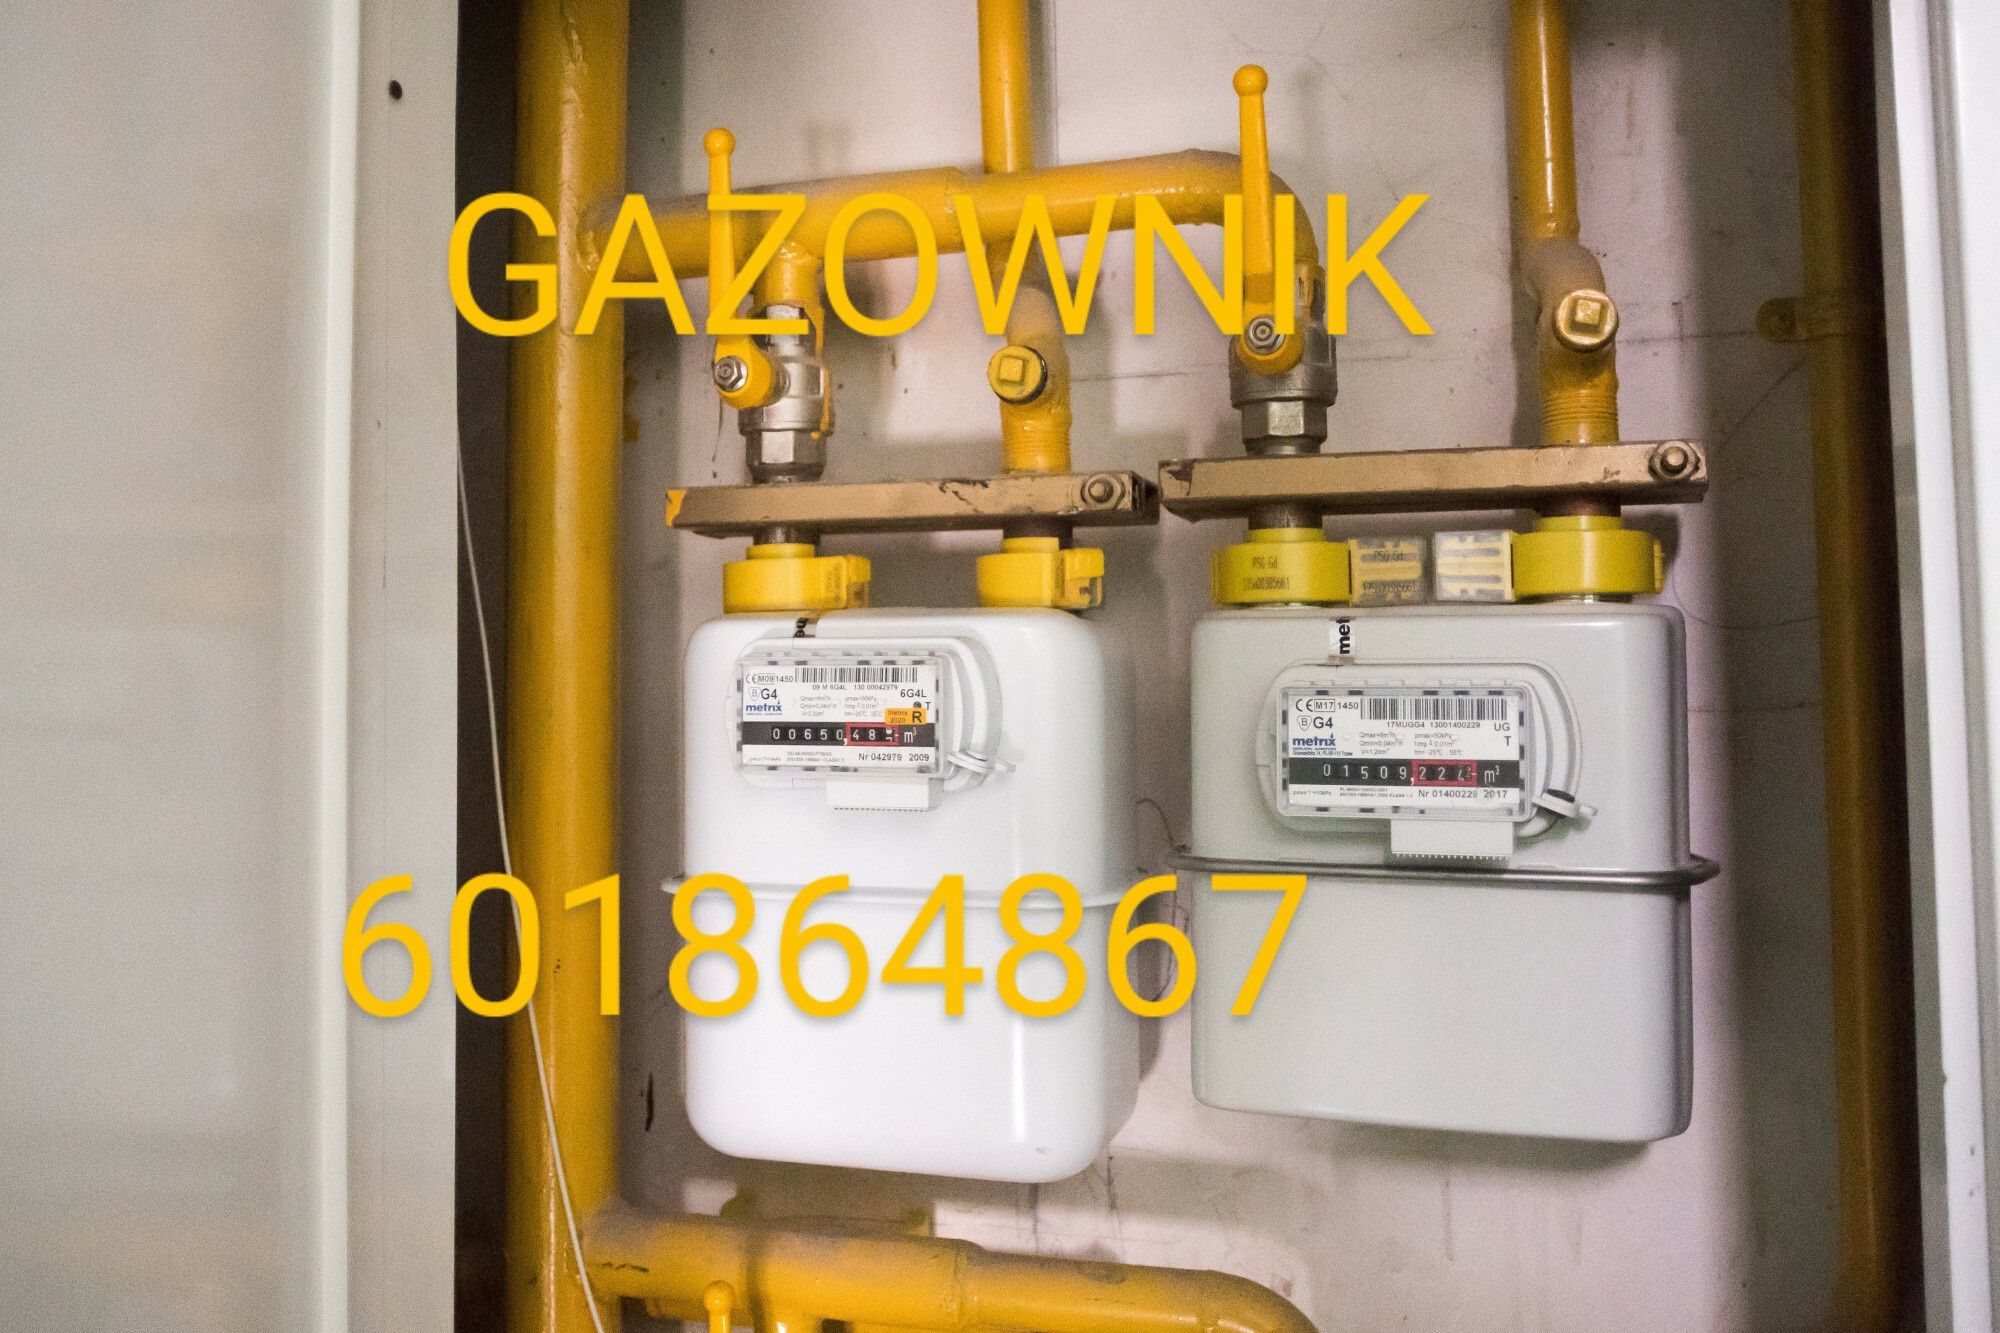 Usługi gazowe Gazownik